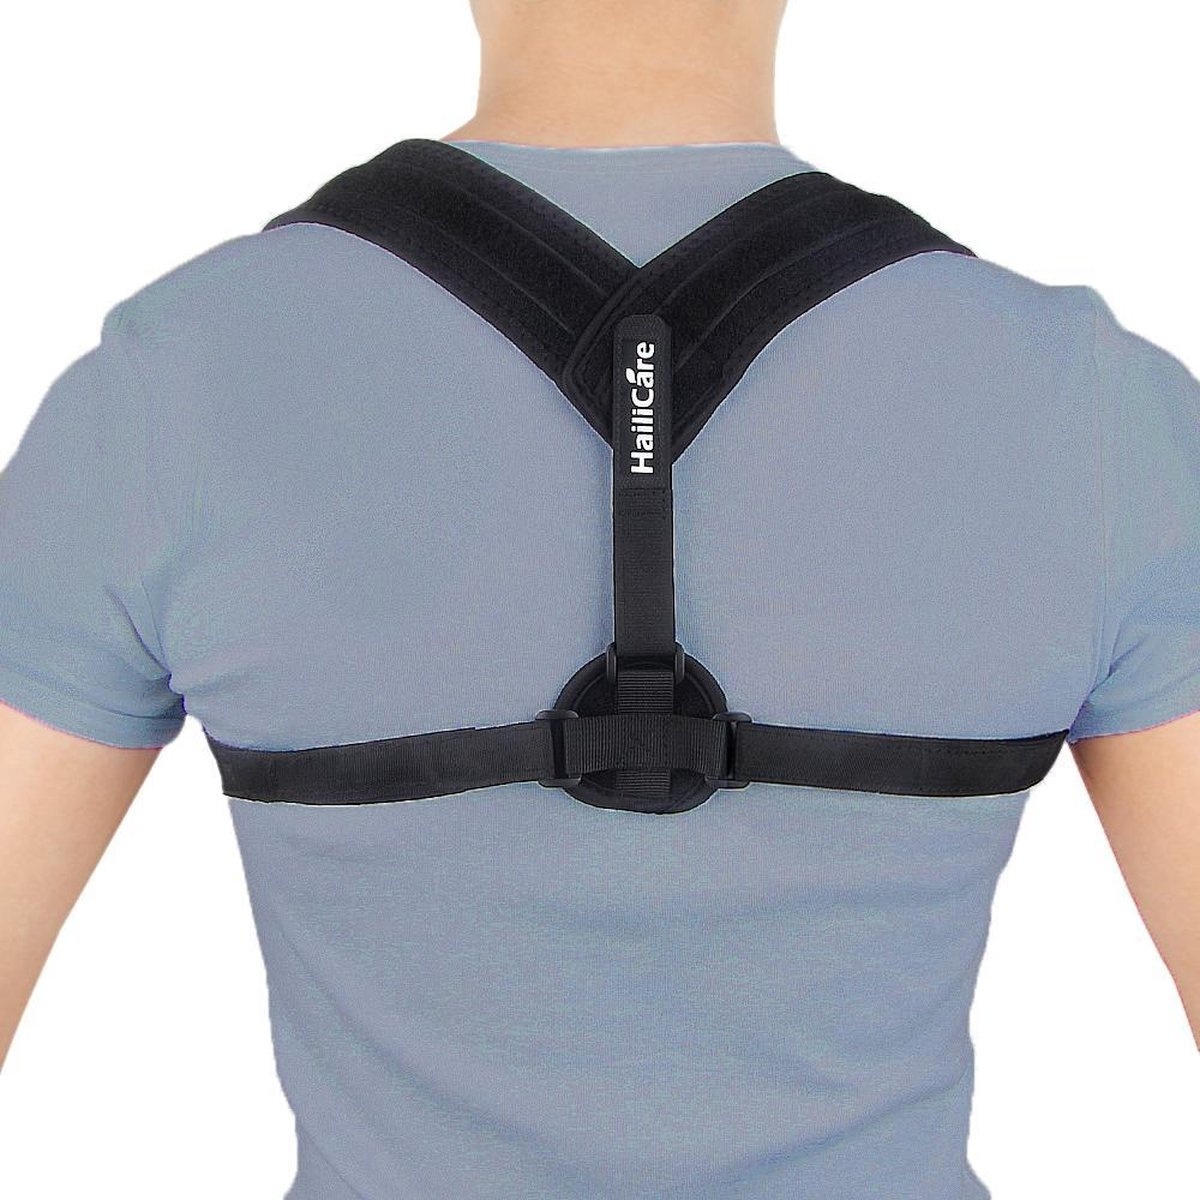 Rigi und günstig Kaufen-Rückenbandage - Einheitsgröße - Die Original Athena Premium Rückenbandage - Haltungskorrekturbandage - Rücken und Schulter. Rückenbandage - Einheitsgröße - Die Original Athena Premium Rückenbandage - Haltungsko